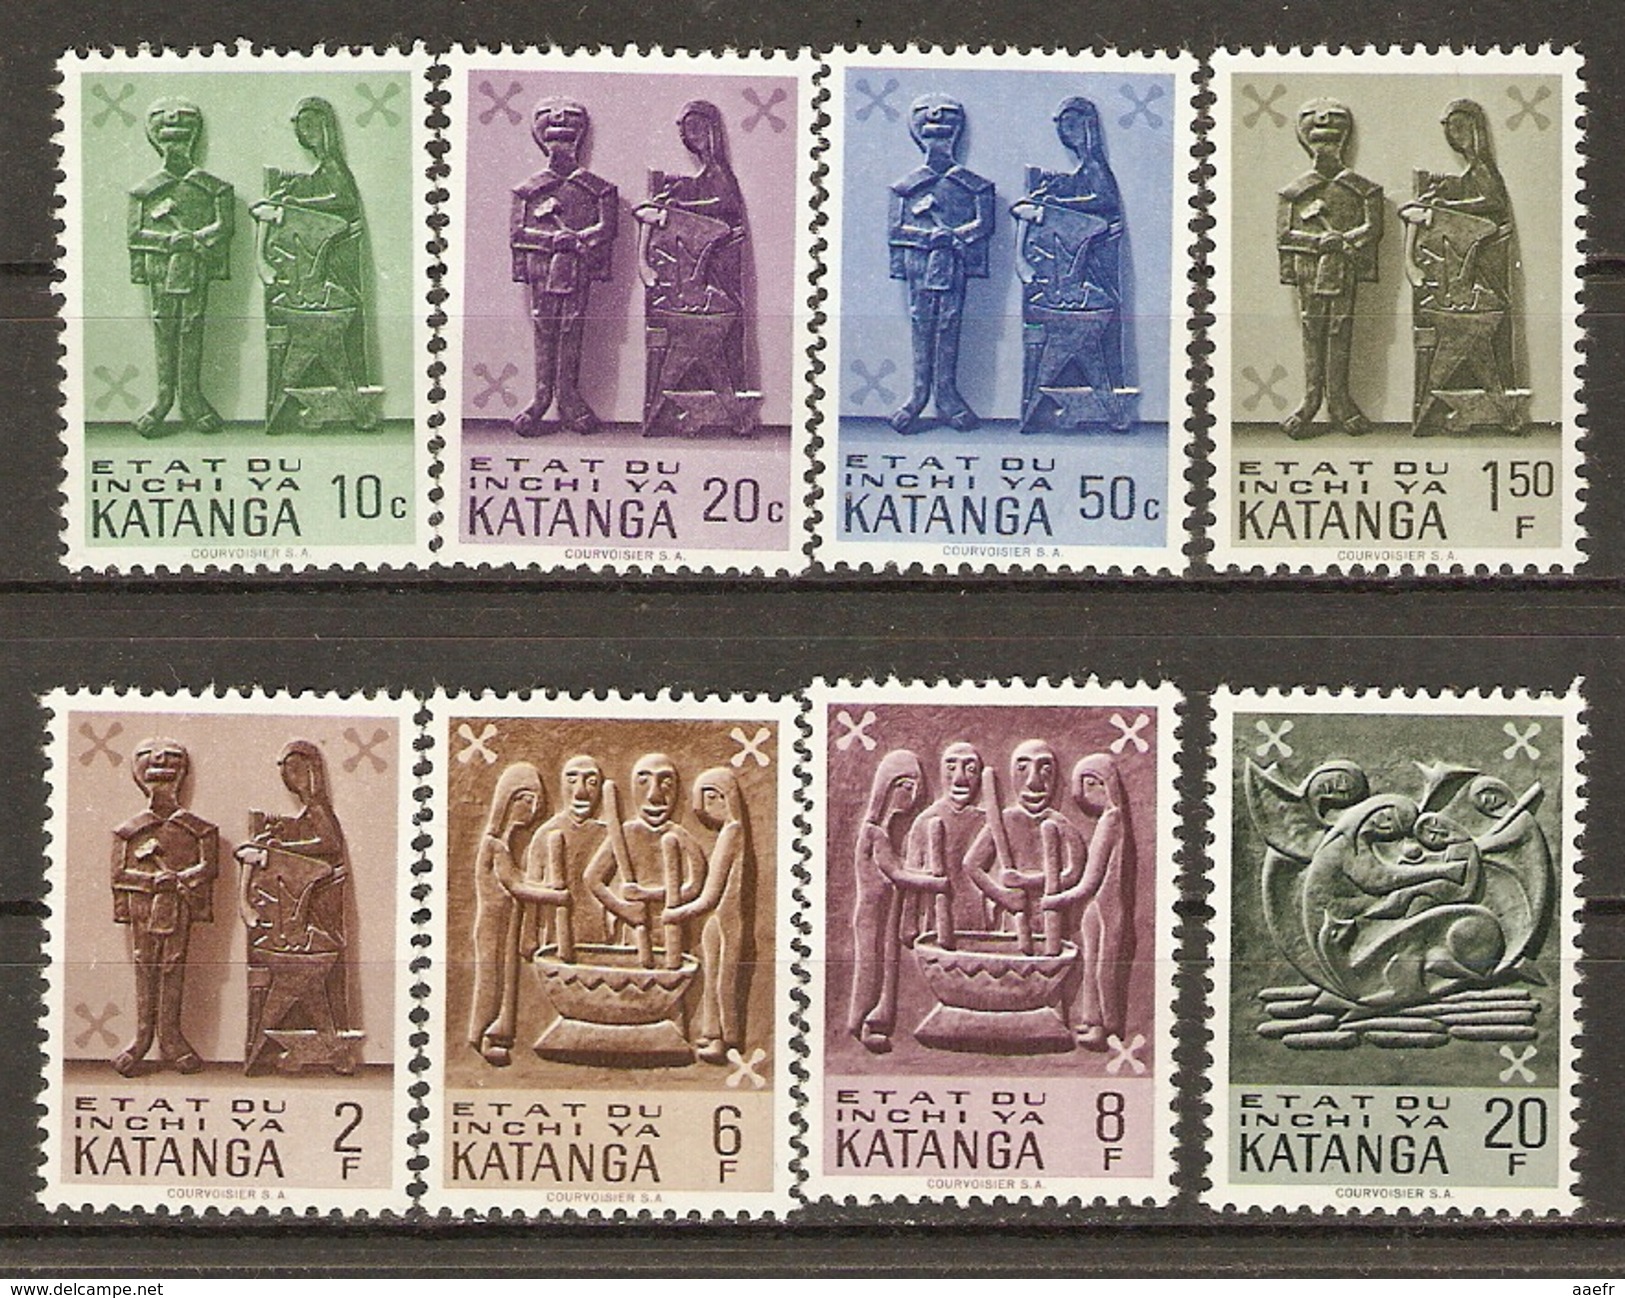 Katanga 1961 - Arts Katangais - Petit Lot De 8 Timbres MNH - Katanga